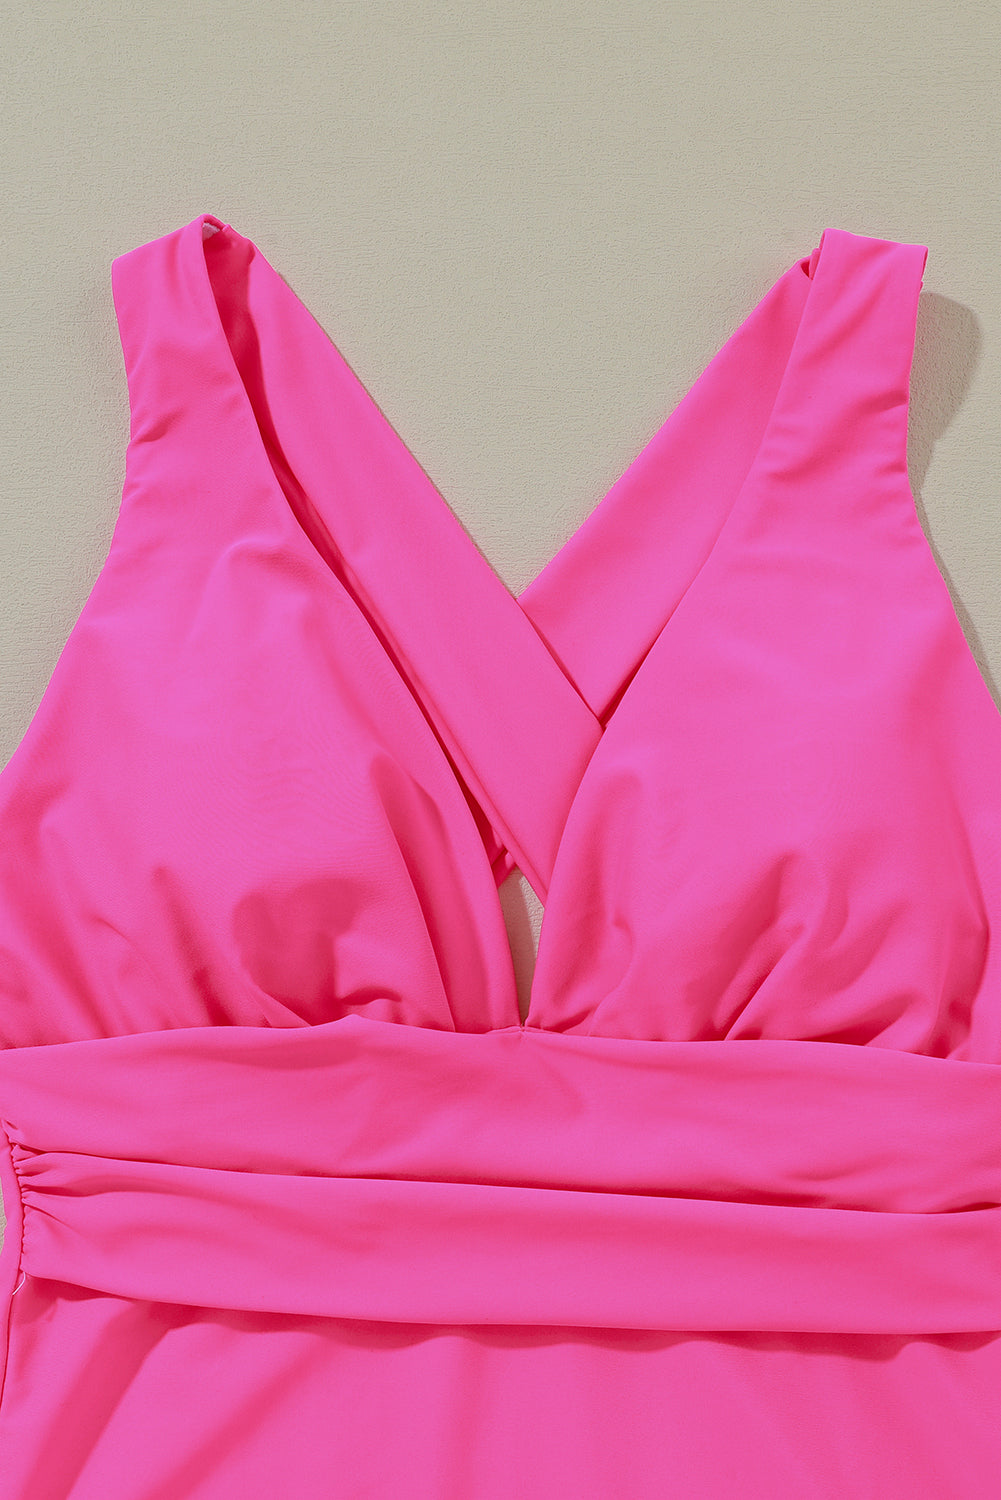 Monokini a taglio alto con volant incrociato sulla schiena e scollo a V profondo rosso rosa